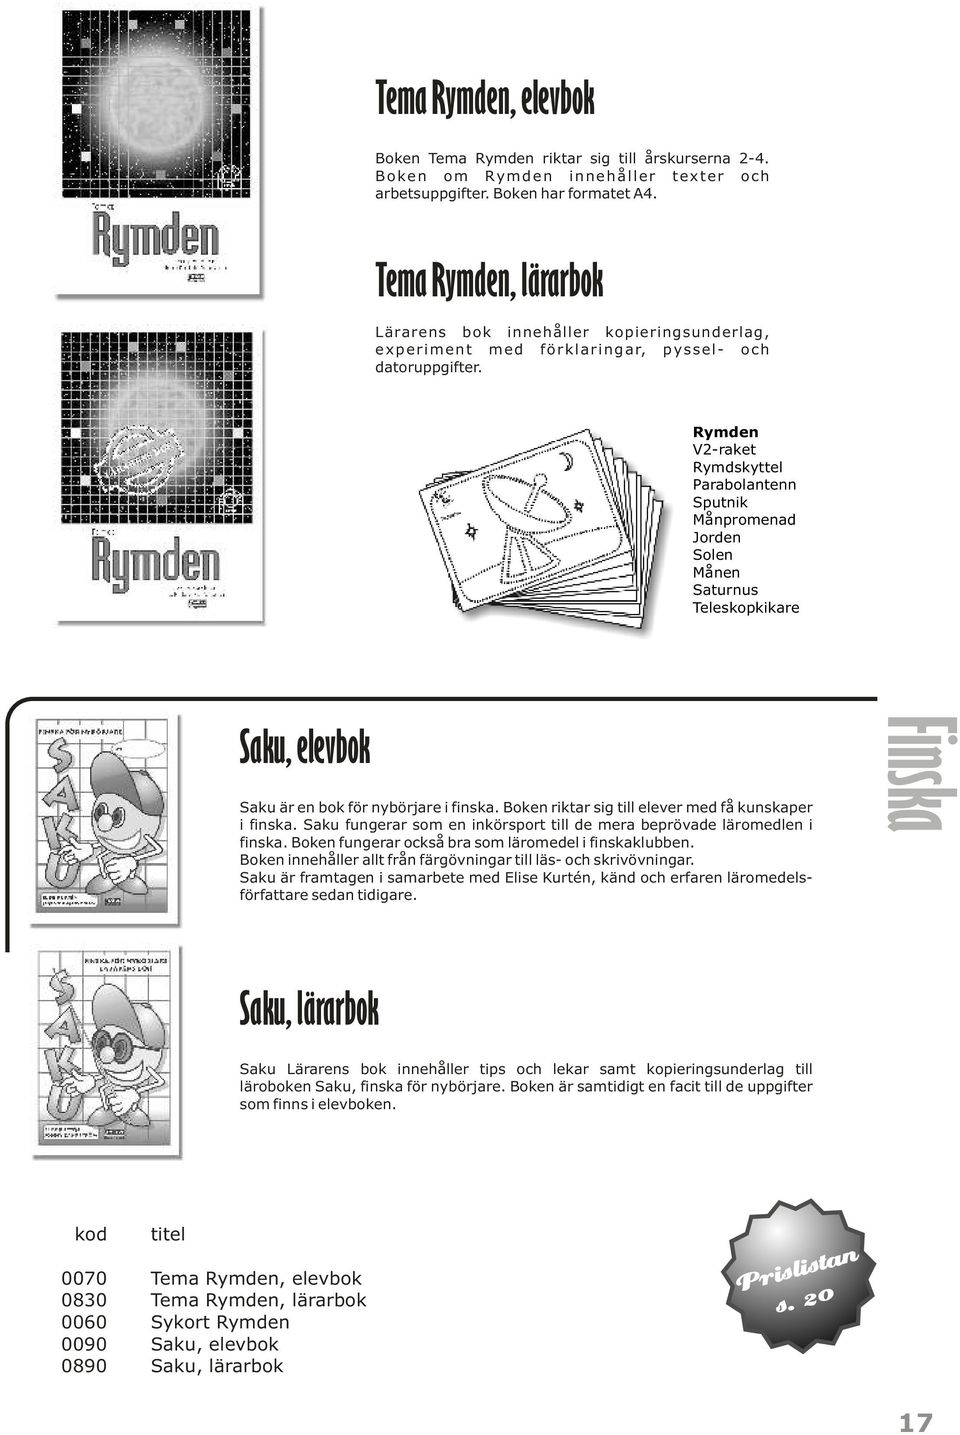 Rymden V2-raket Rymdskyttel Parabolantenn Sputnik Månpromenad Jorden Solen Månen Saturnus Teleskopkikare Saku, elevbok Saku är en bok för nybörjare i finska.